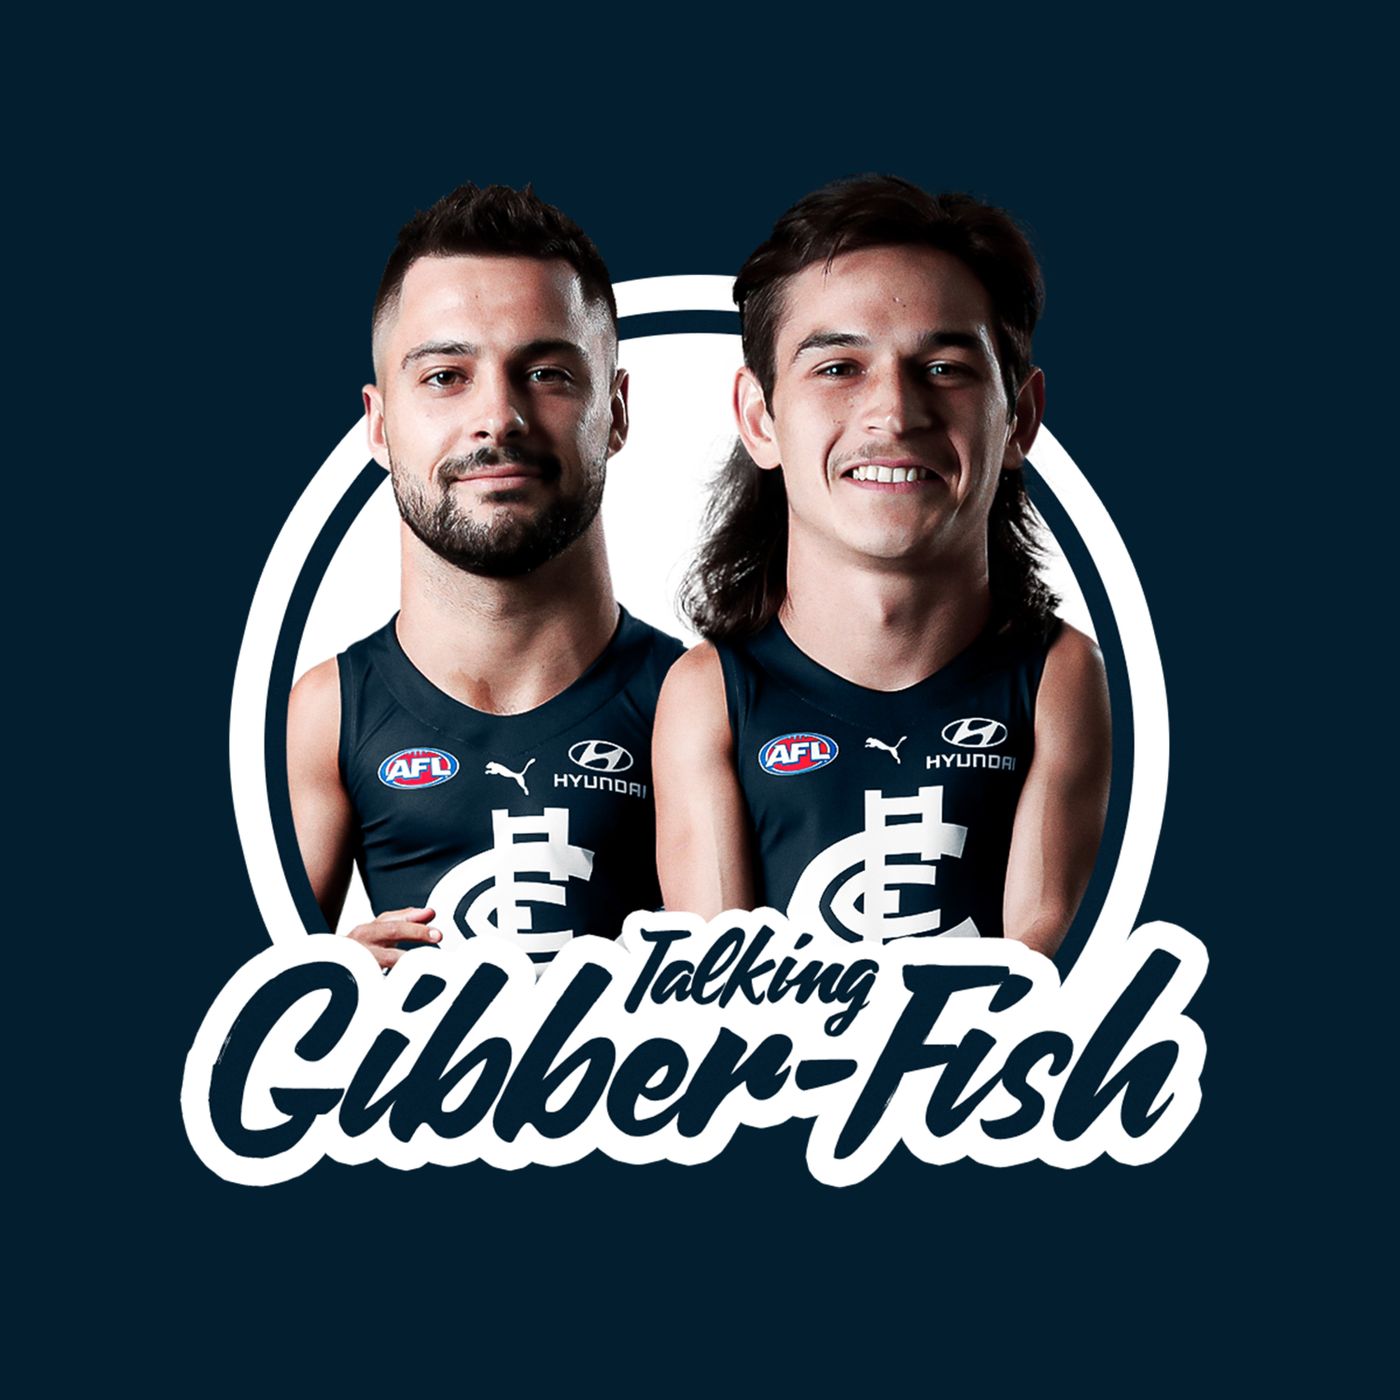 Talking Gibber-Fish